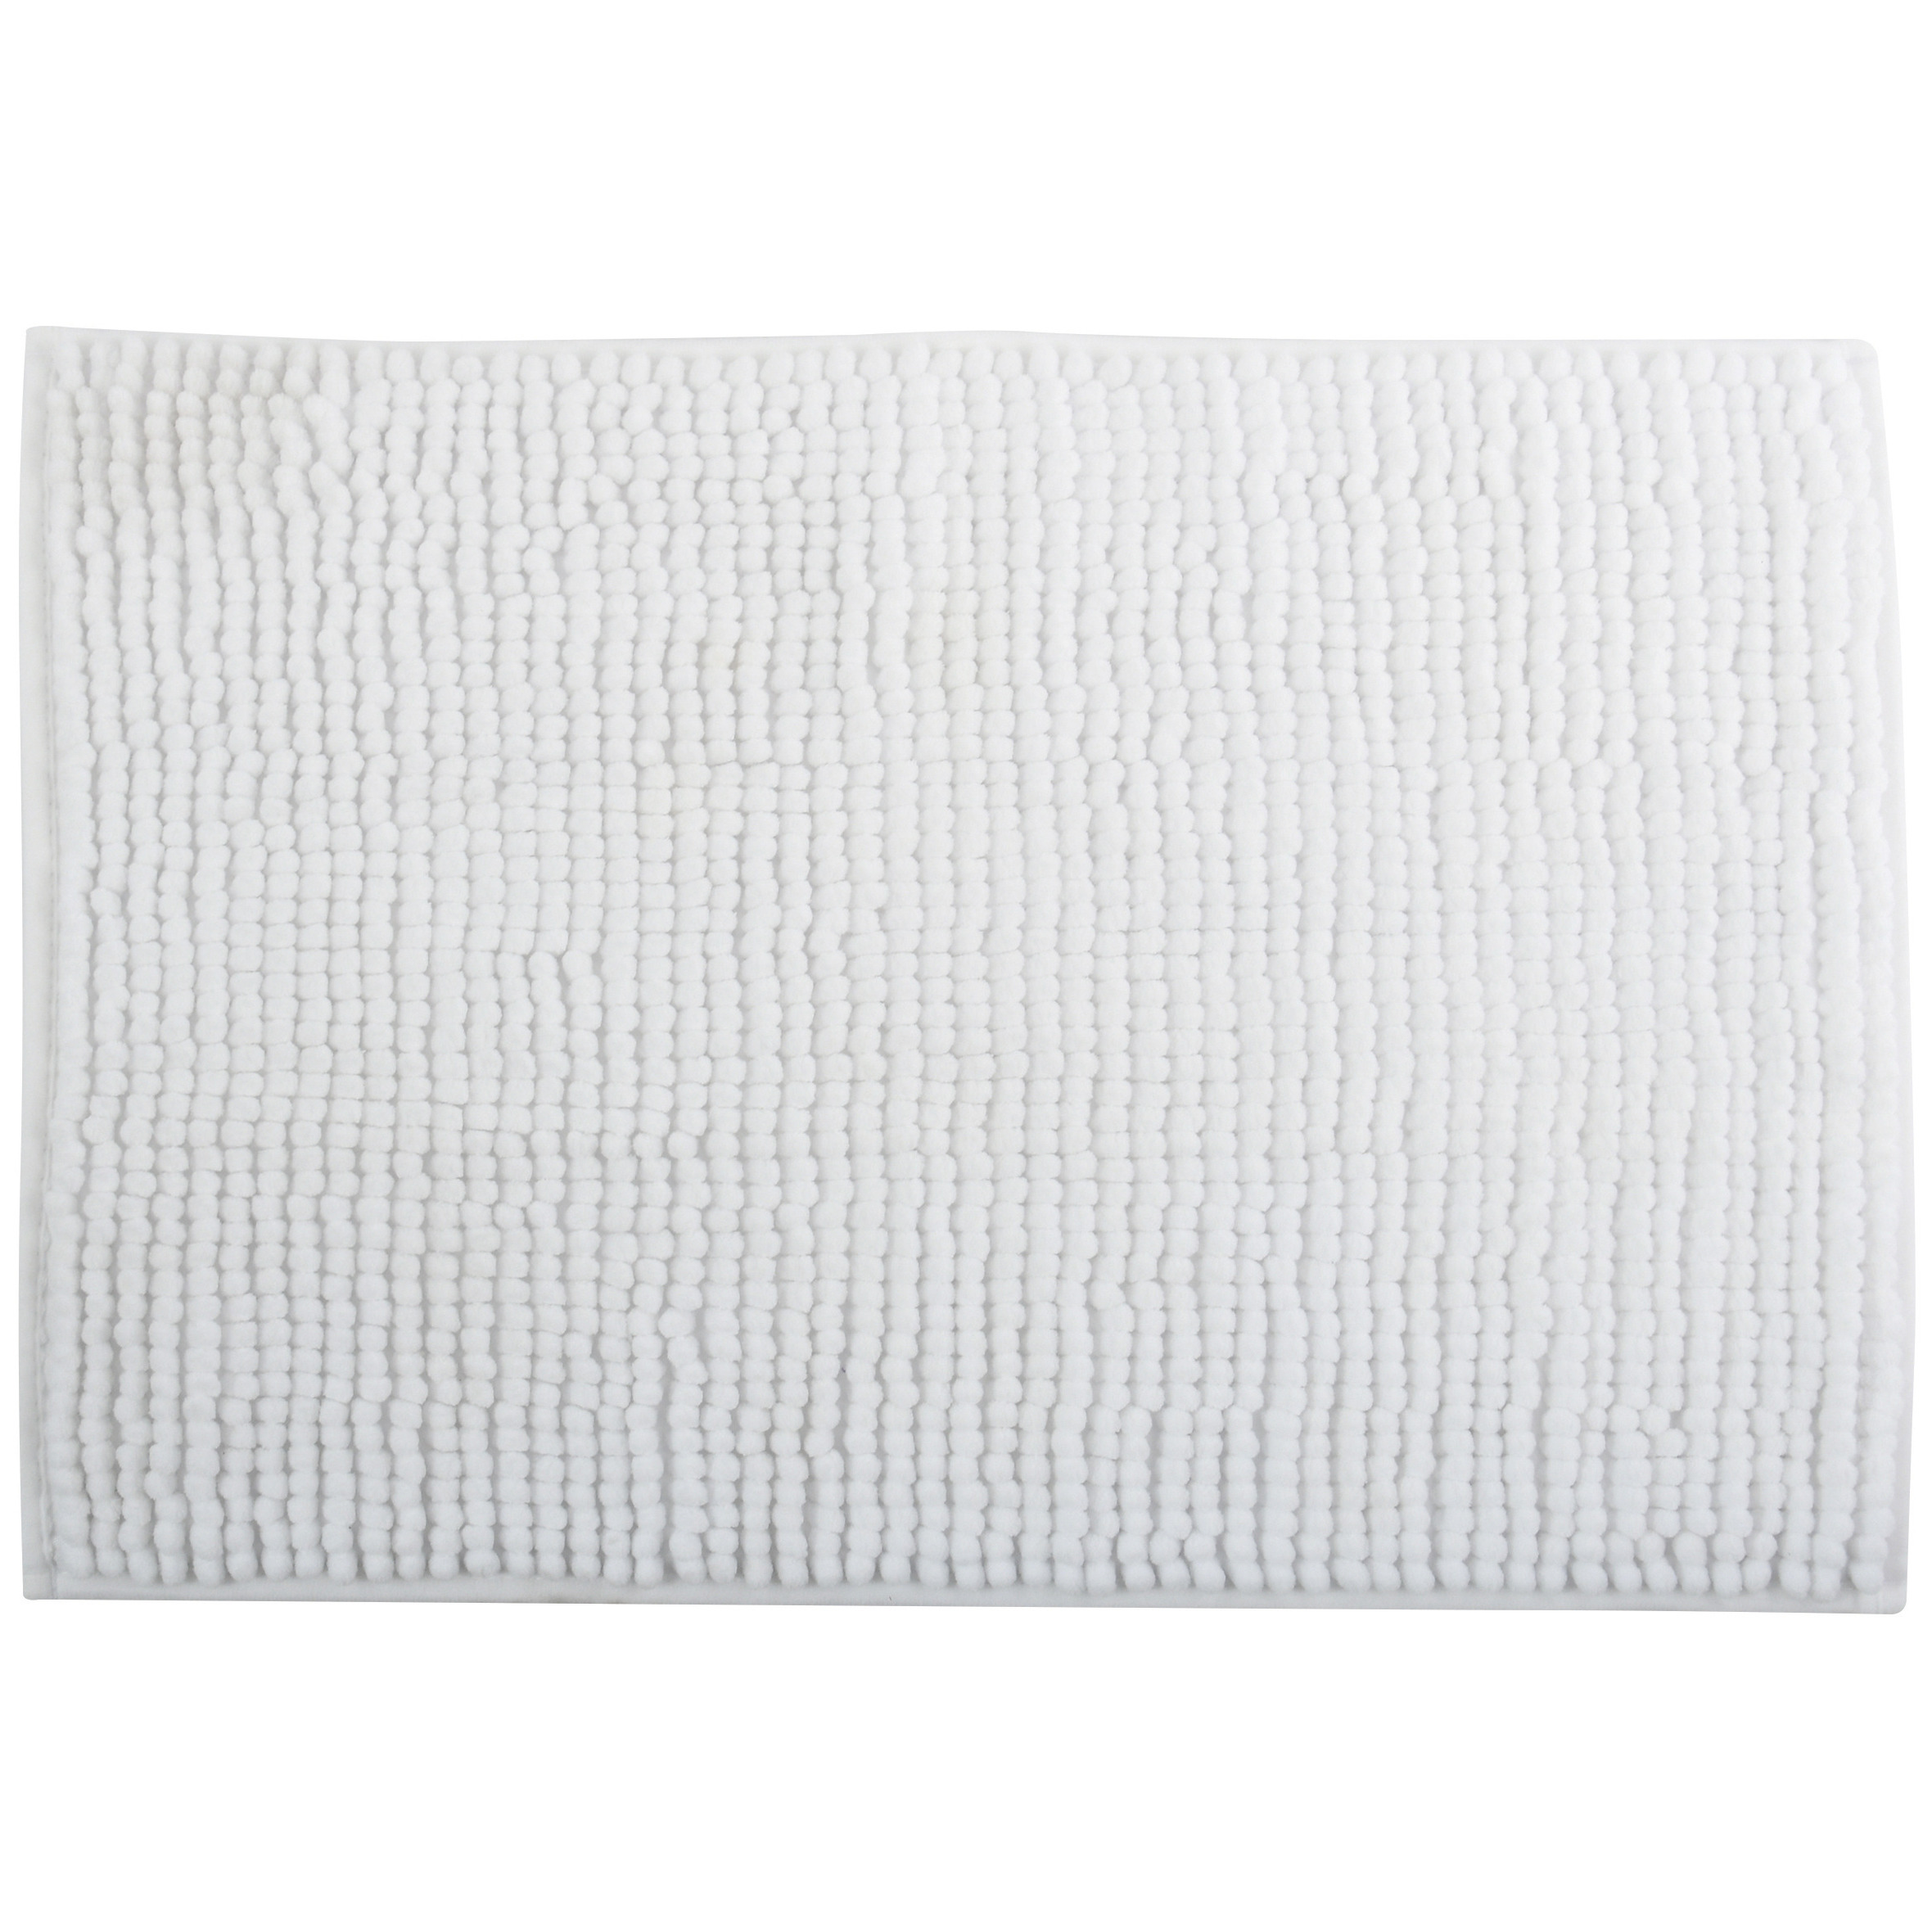 Badkamerkleedje-badmat tapijt voor op de vloer ivoor wit 40 x 60 cm